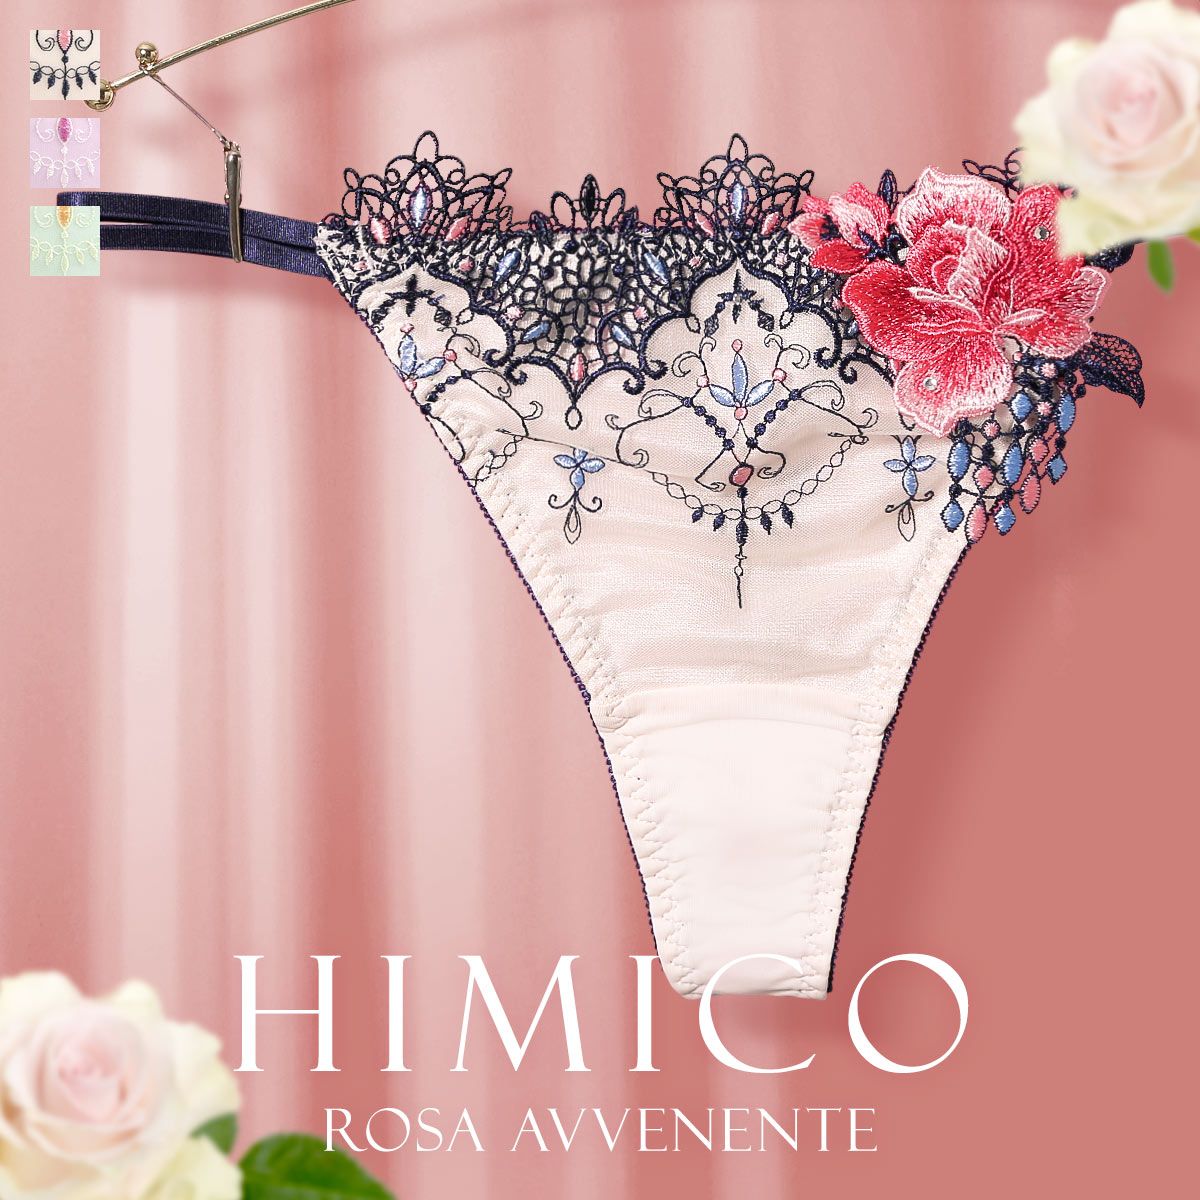 【メール便(7)】【送料無料】 HIMICO 美しい薔薇の魅力漂う Rosa Avvenente ショーツ Tバック ソング タンガ ML 021series 単品